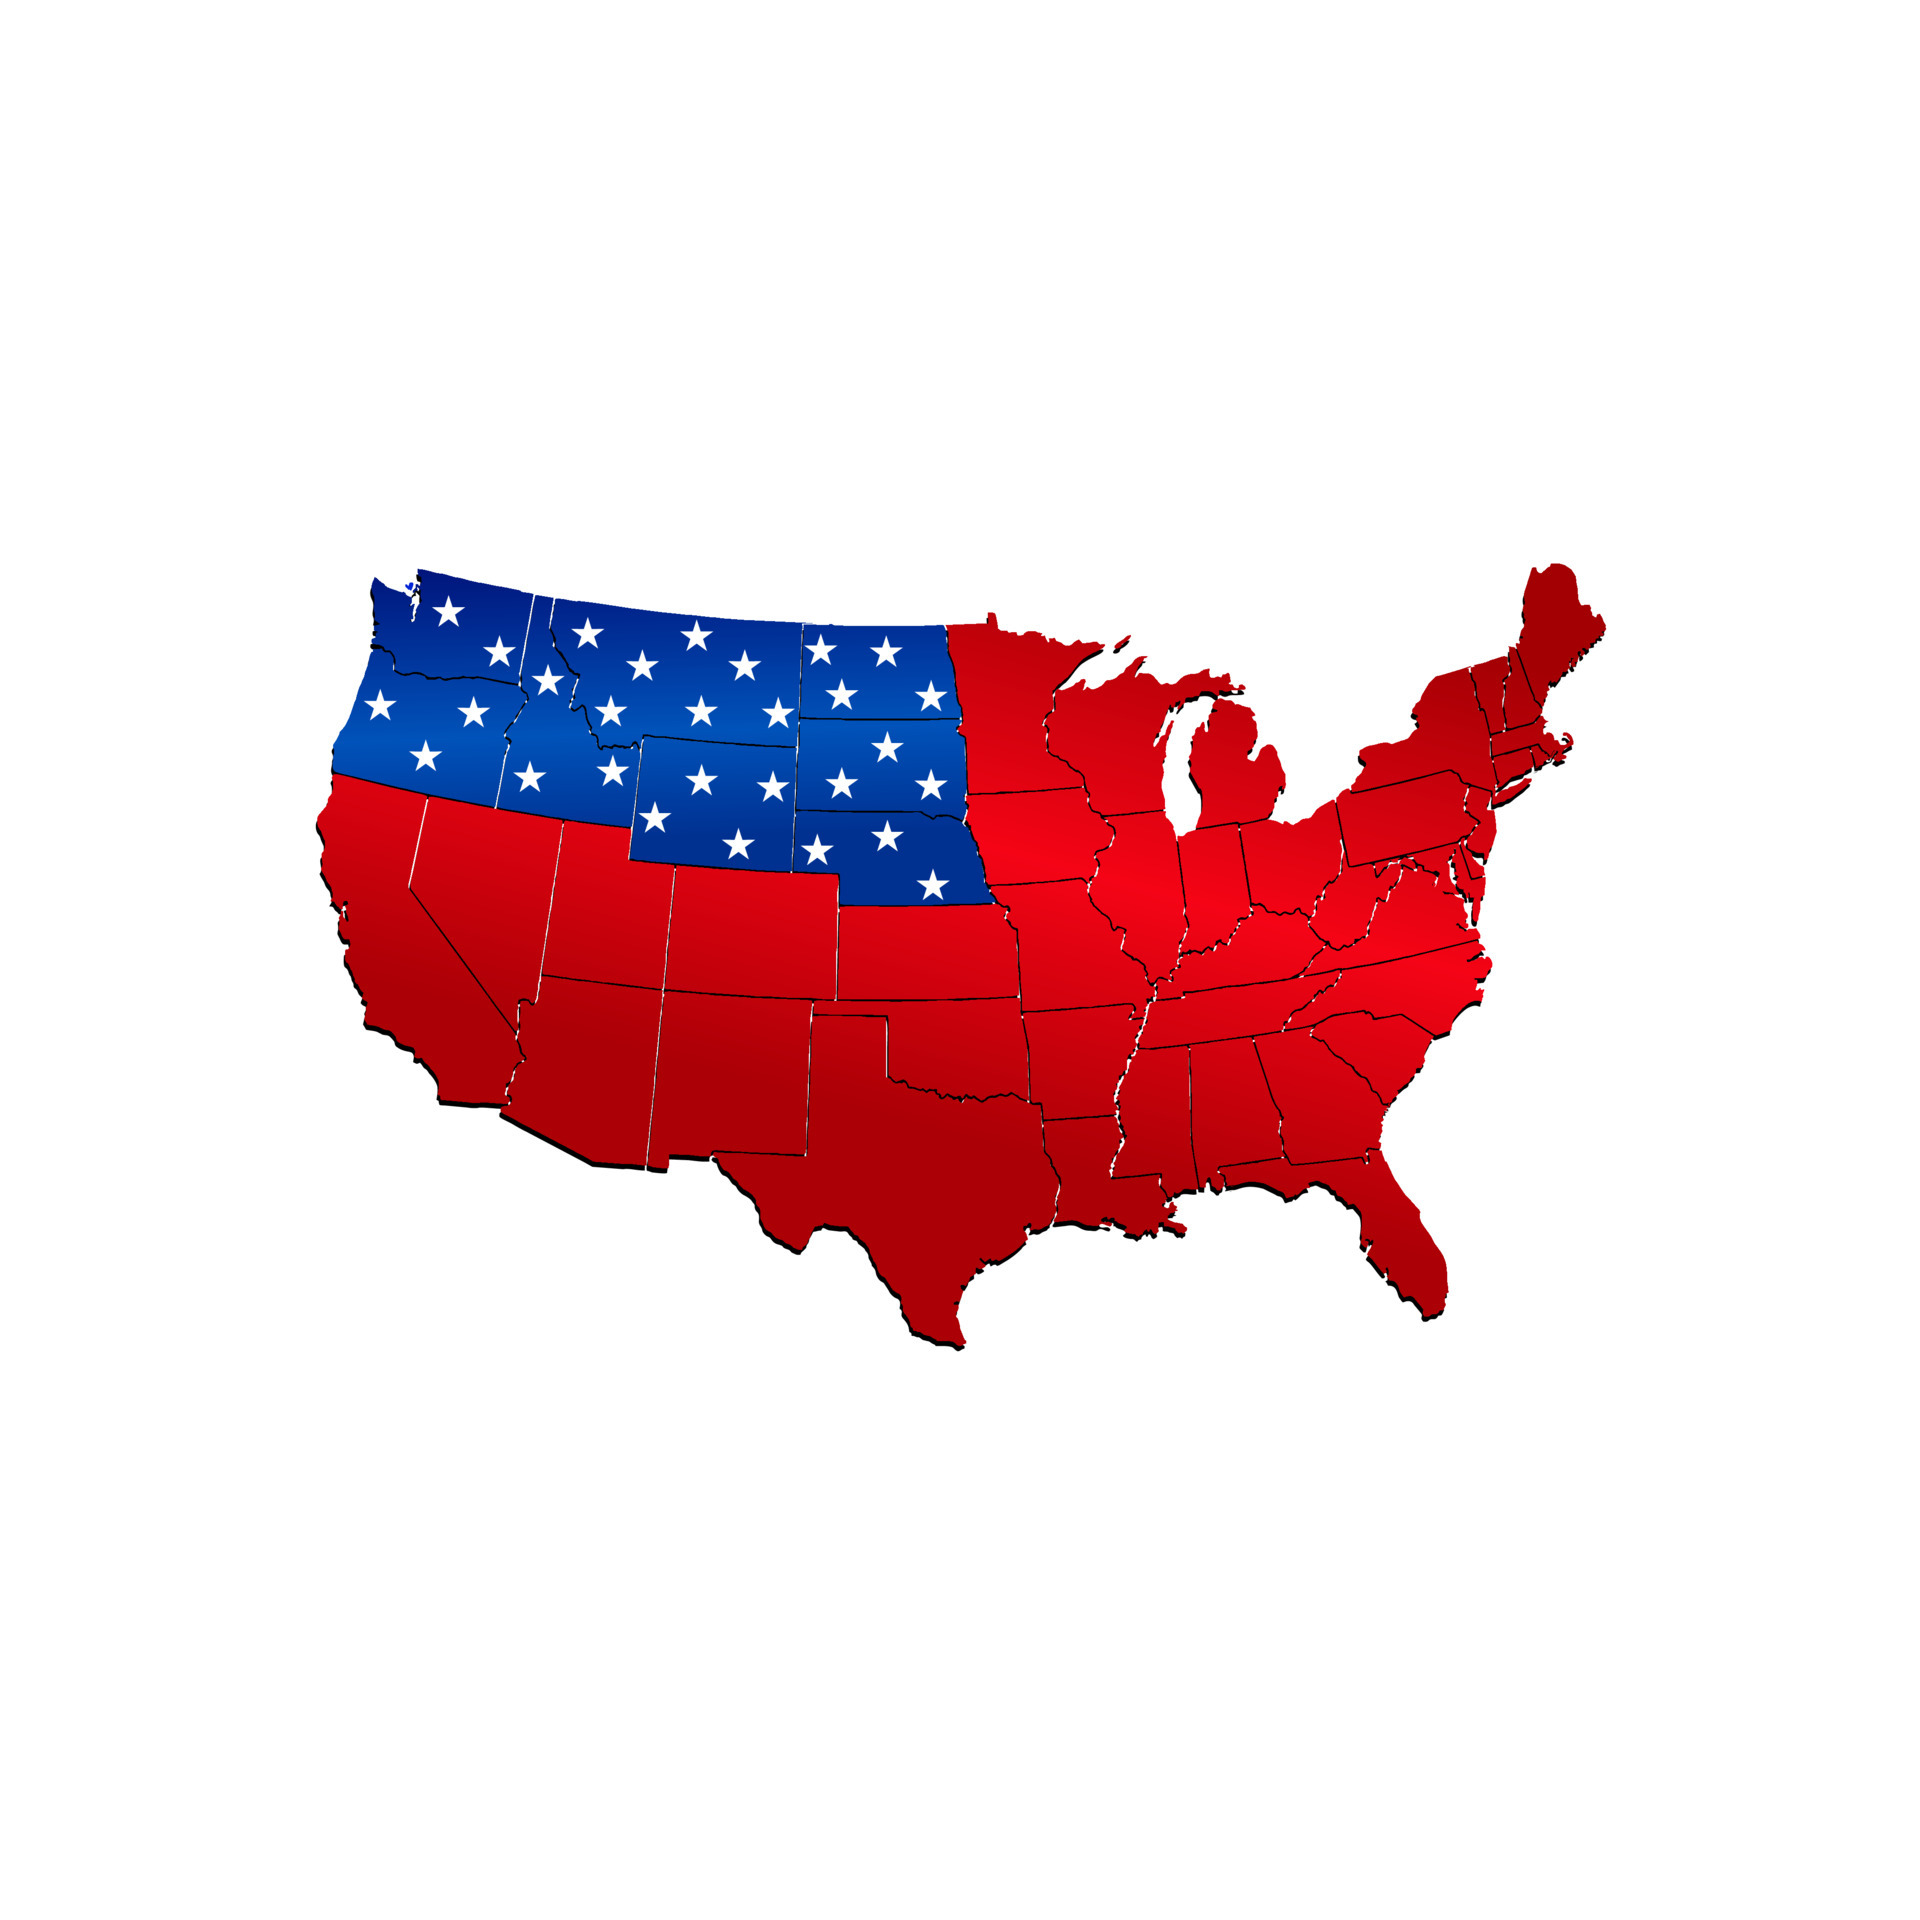 Etat-Unis d'Amérique. carte drapeau des états-unis. carte usa pays